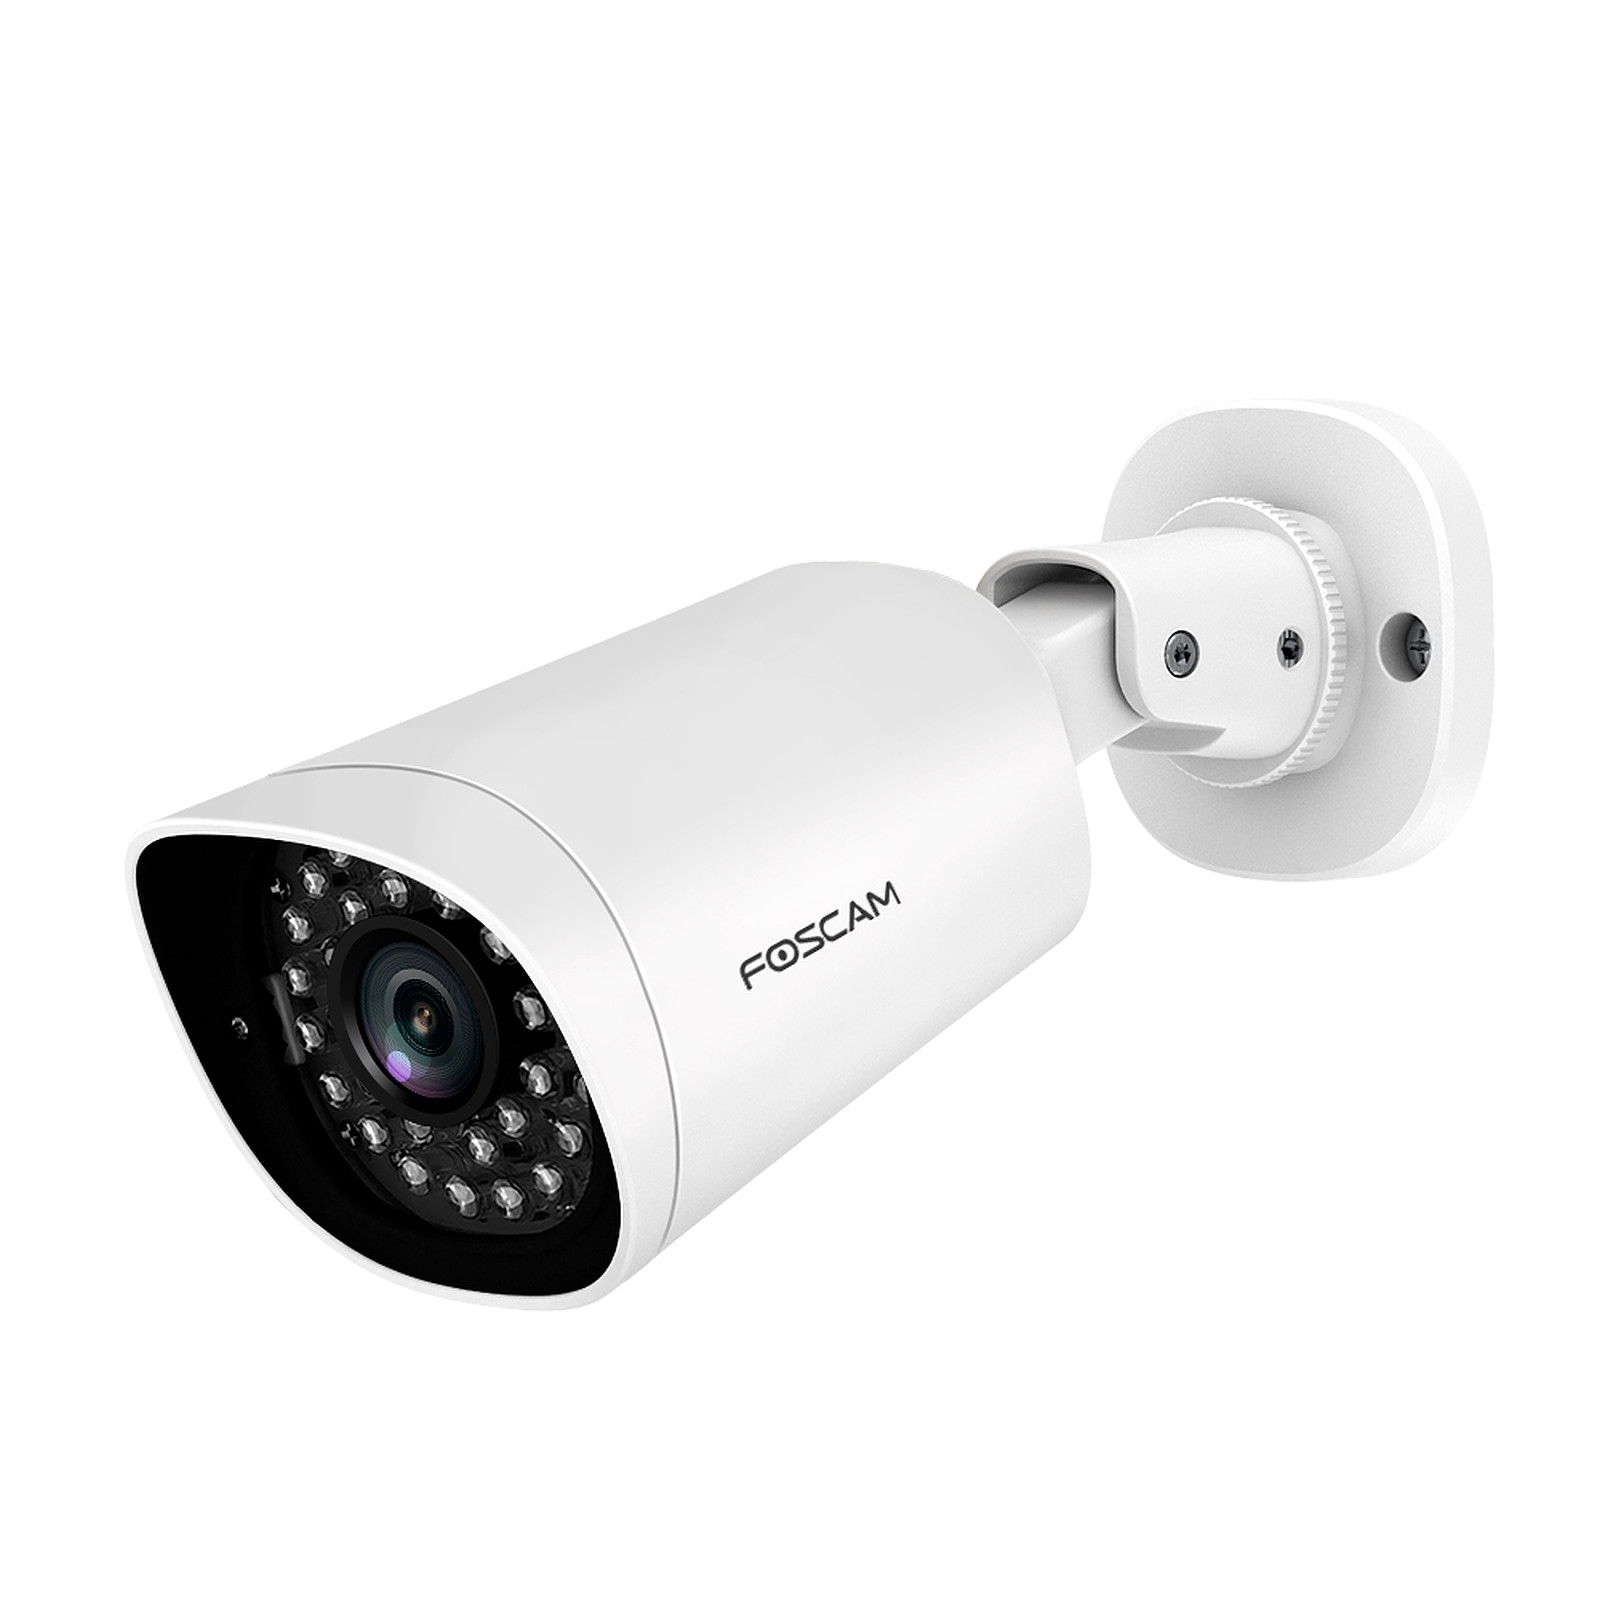 Foscam - Camera exterieure PoE qualite 2MP - G2EP - Camera IP Foscam